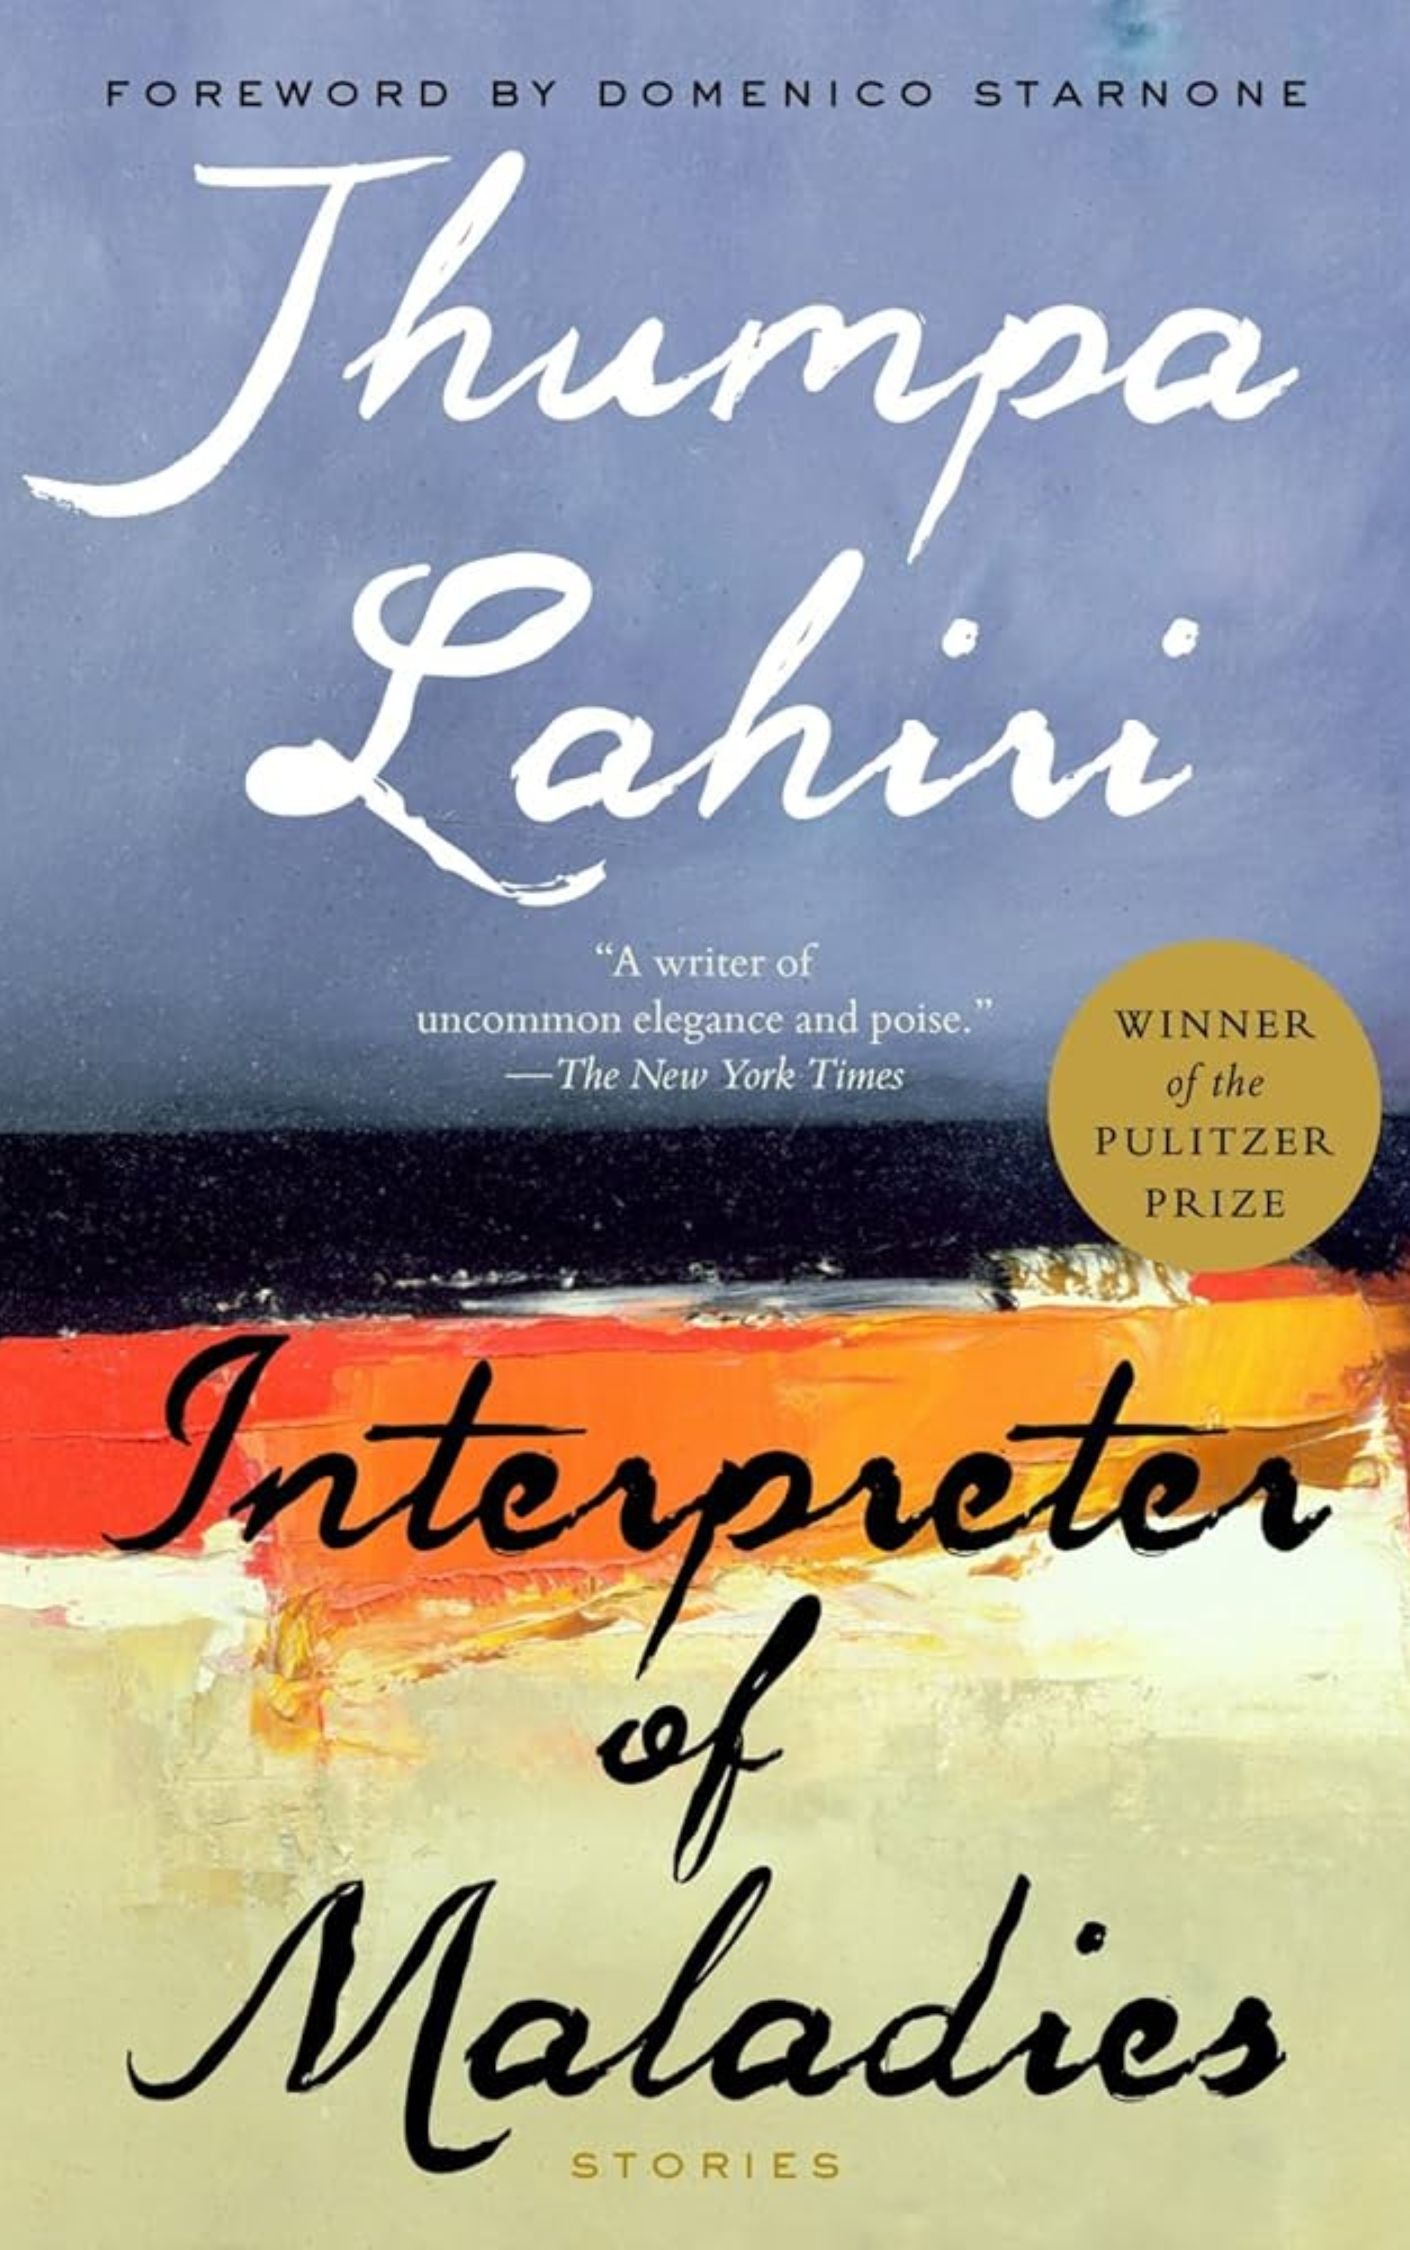 "Interpreter of Maladies" by Jhumpa Lahiri: Books for Women